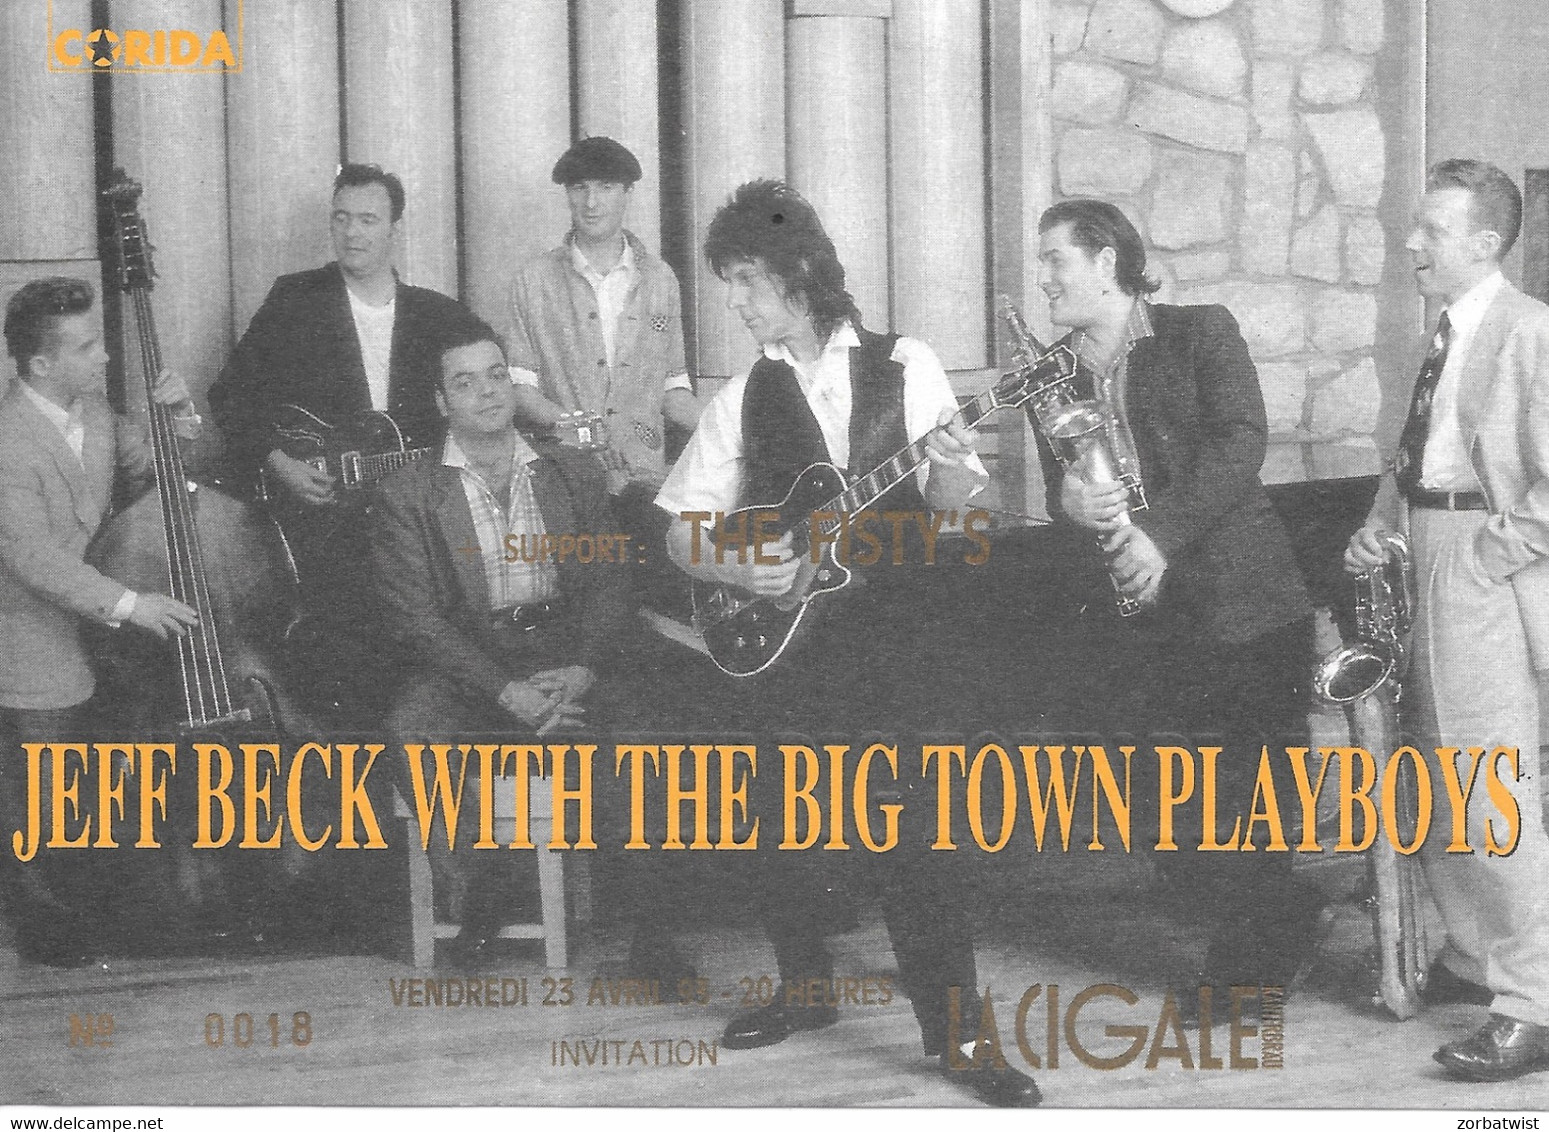 TICKET DE CONCERT JEFF BECK WITH THE BIG DOWN TOWN PLAY LA CIGALE PARIS 9/07/1998 - Tickets De Concerts